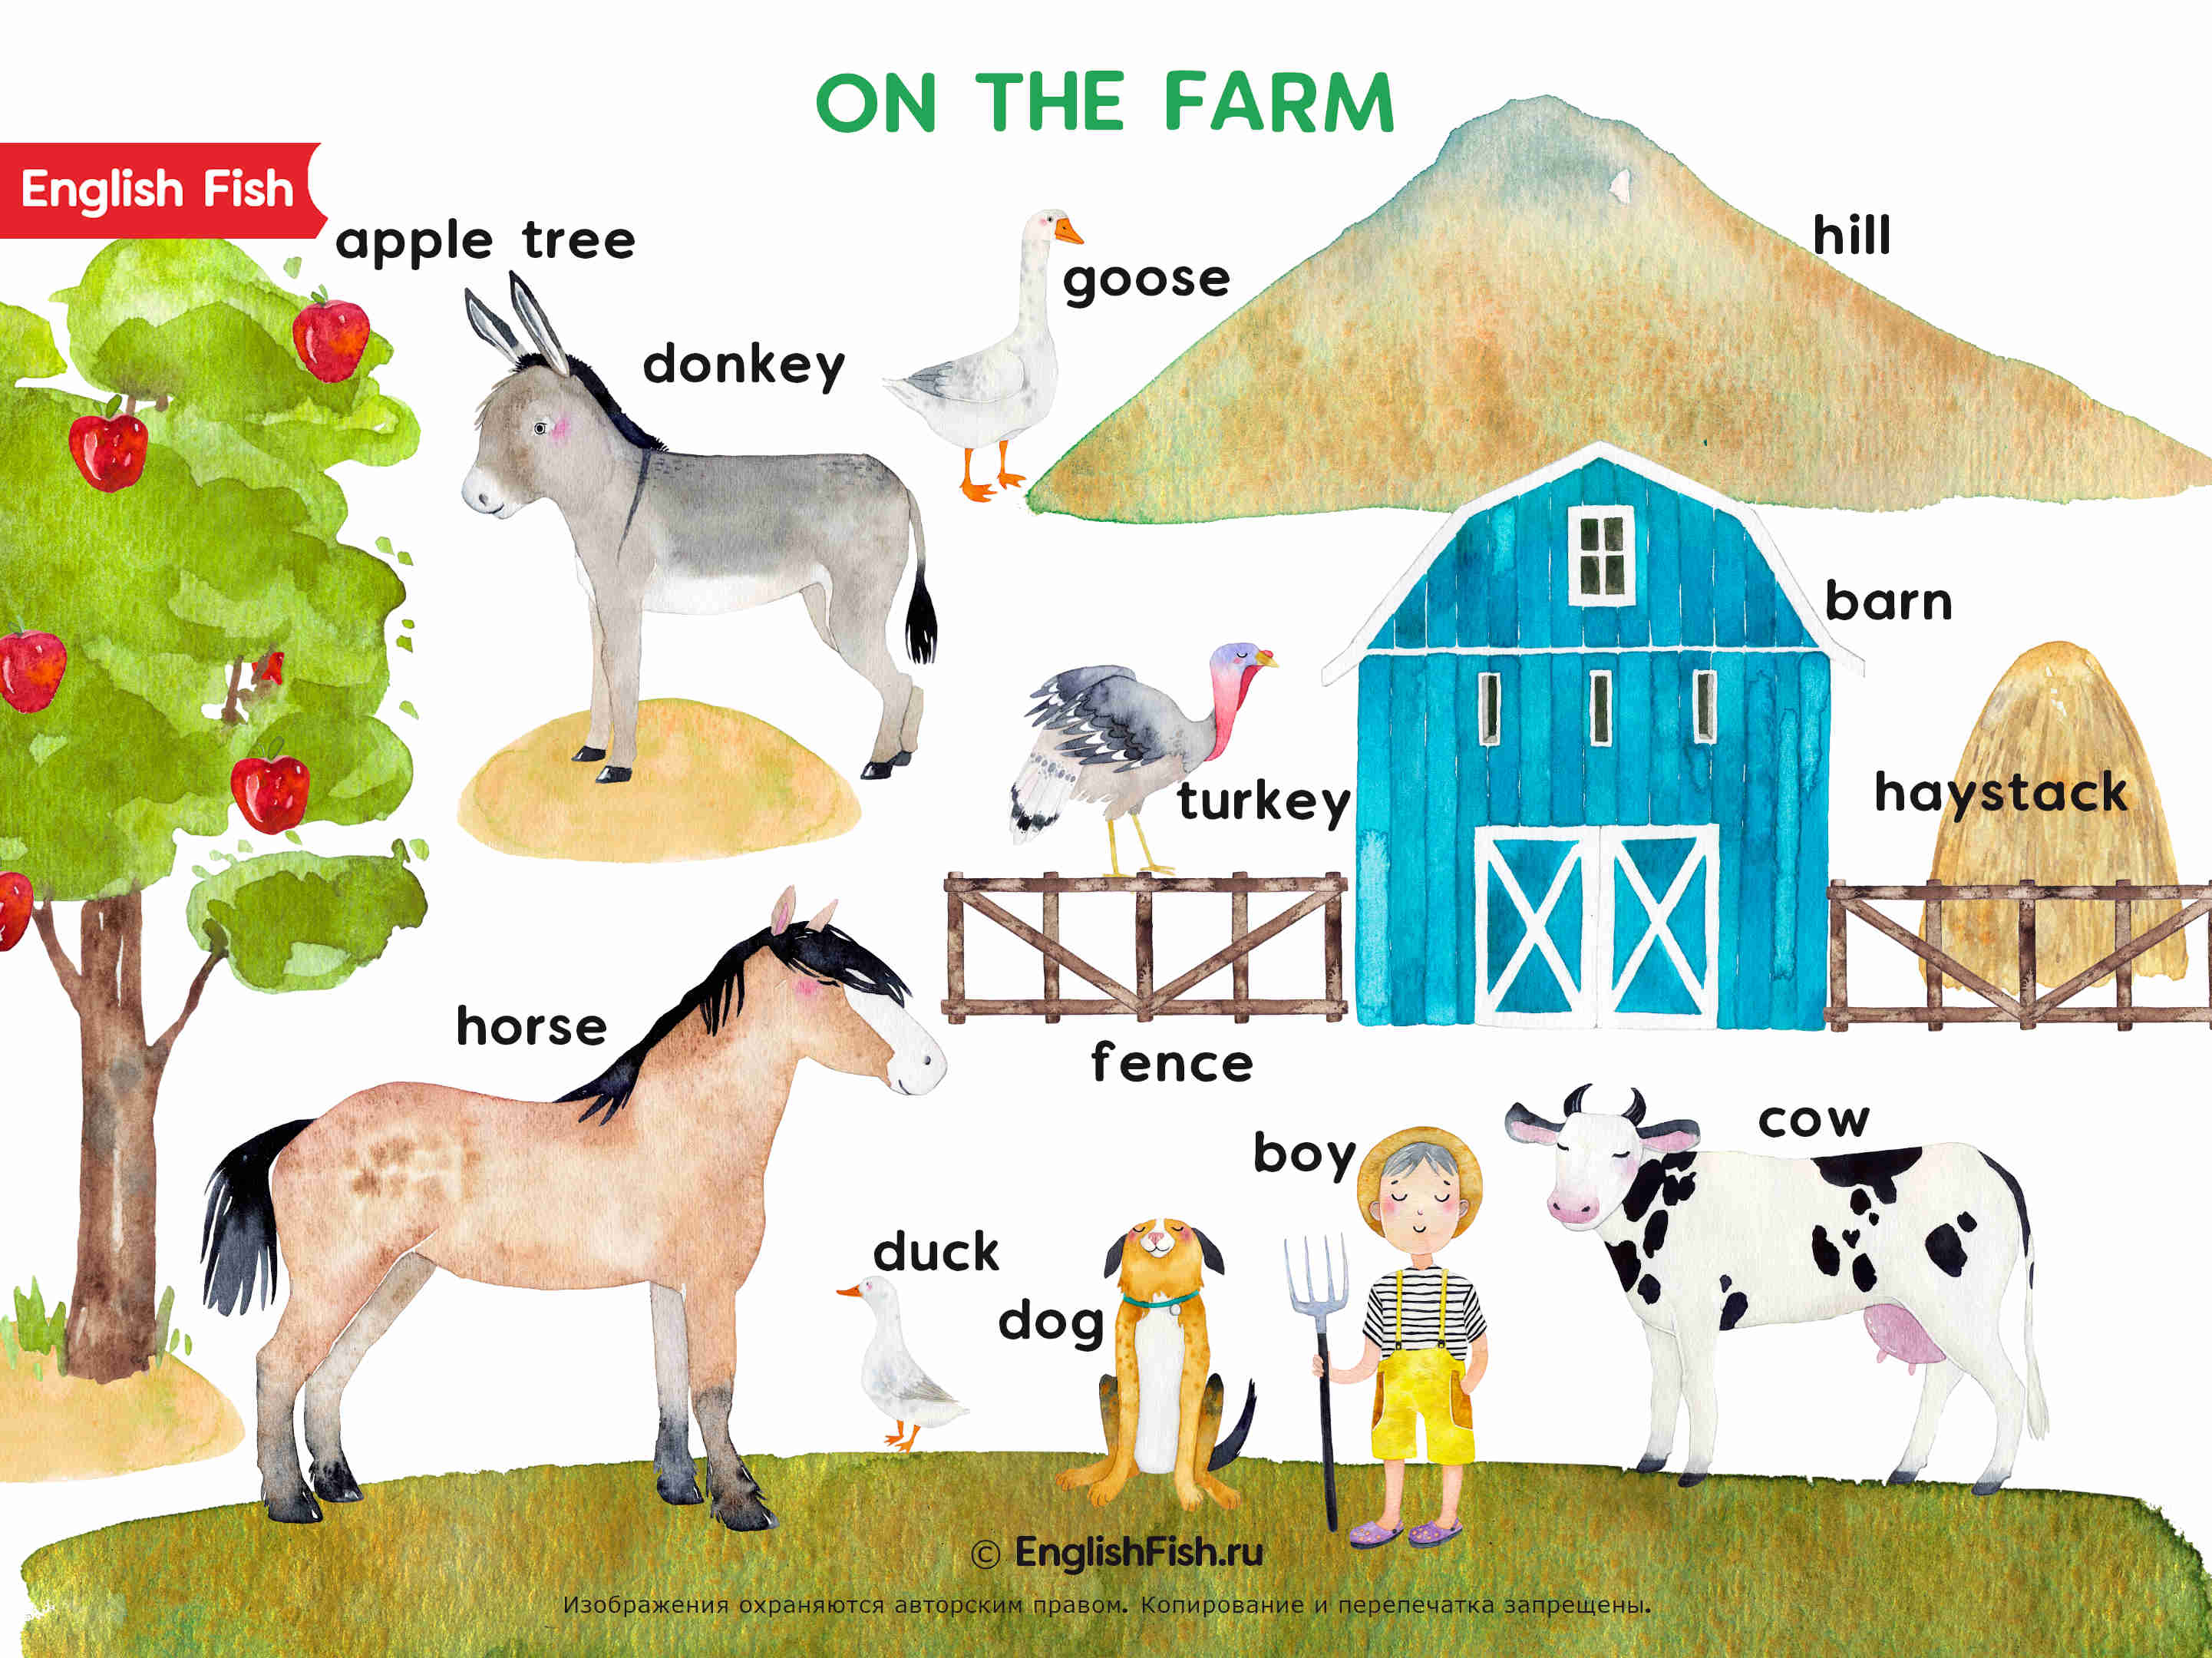 Домашние животные (farm animals) в английских стихах и загадках